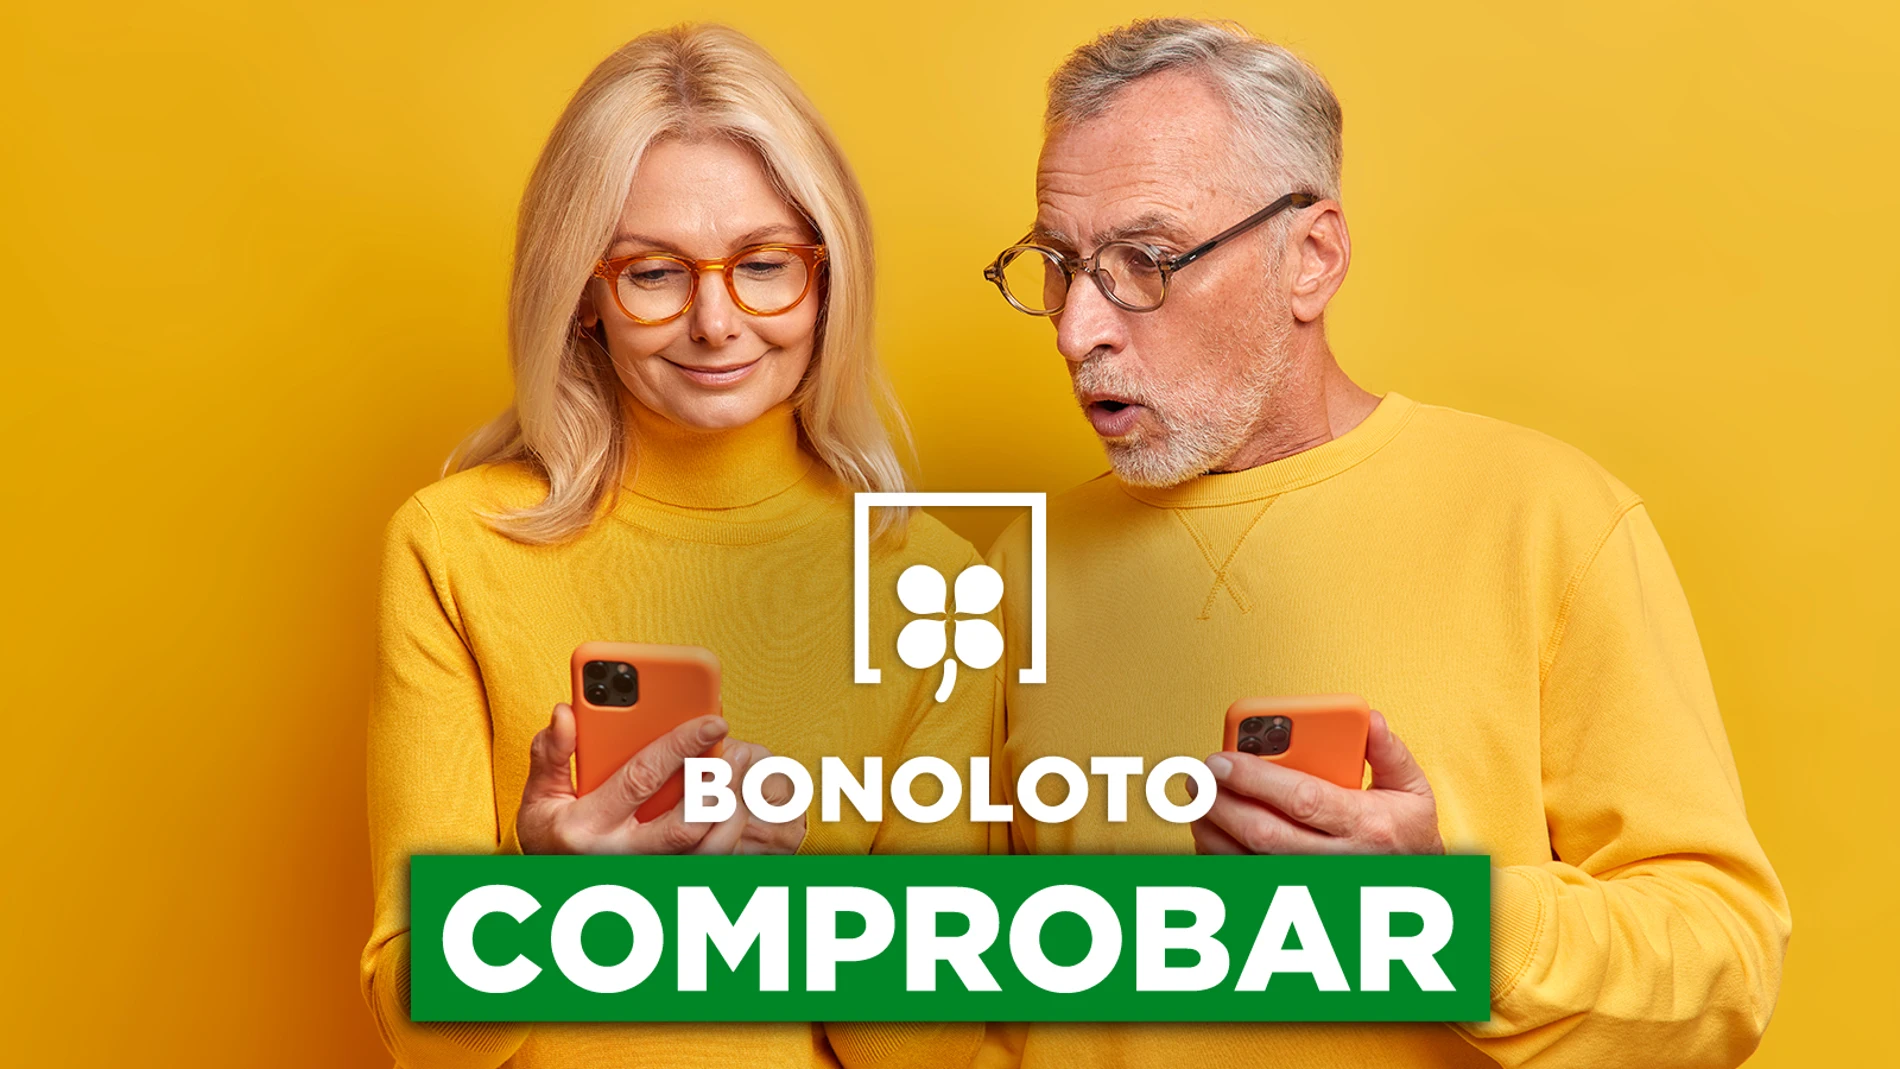 Bonoloto: comprobar hoy, viernes 12 de agosto de 2022